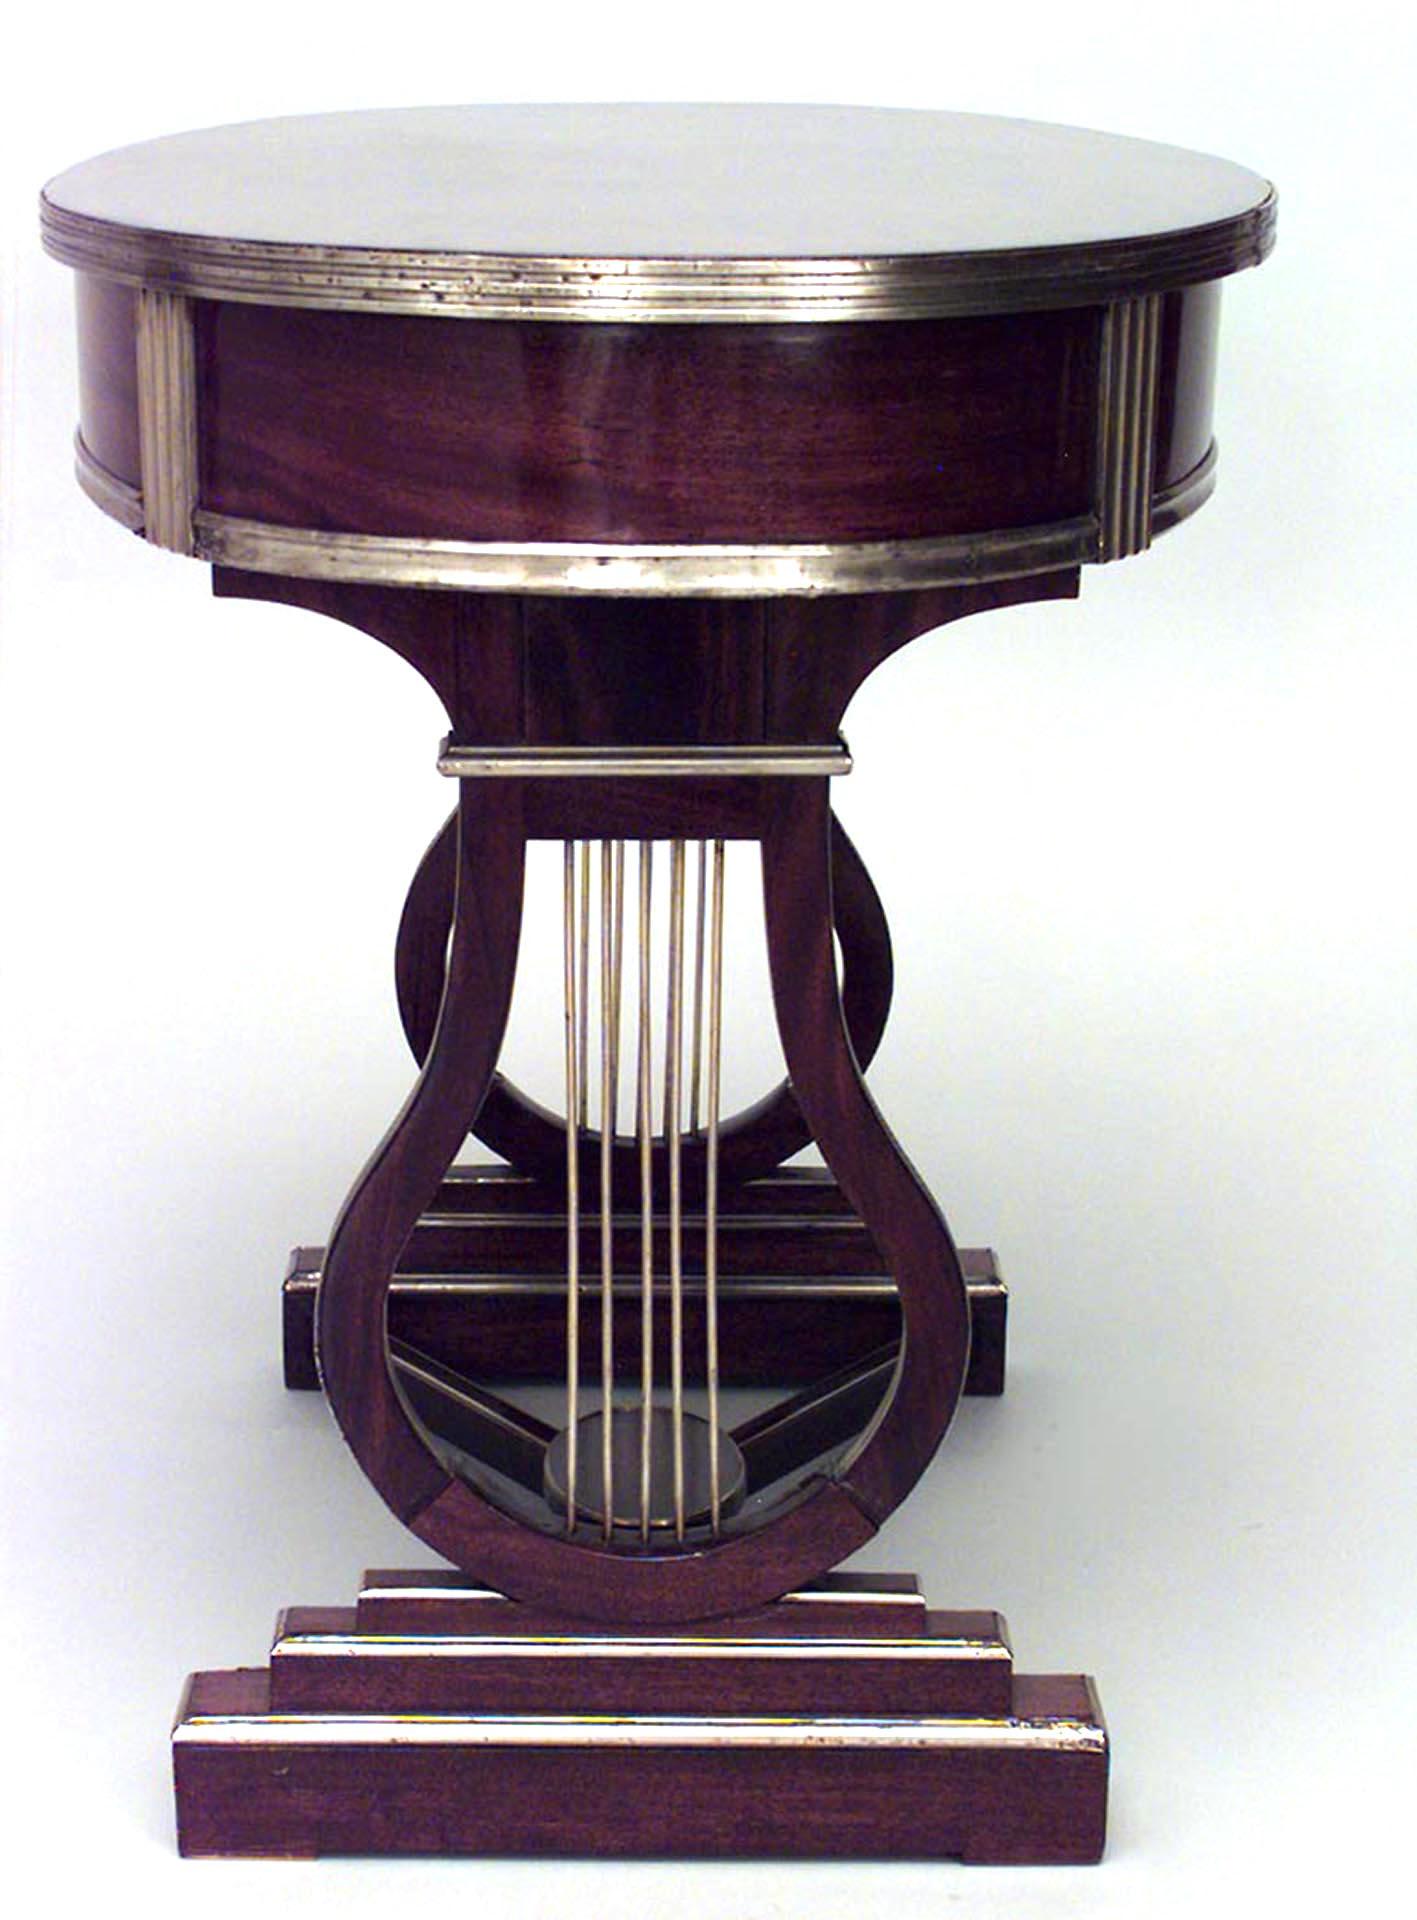 Russischer neoklassizistischer (18/19. Jahrhundert) messingmontierter Mahagoni-Schreibtisch mit ovaler Platte über einer Fries-Schublade auf Lyra-Bockstützen, die durch eine Bahre verbunden sind.
